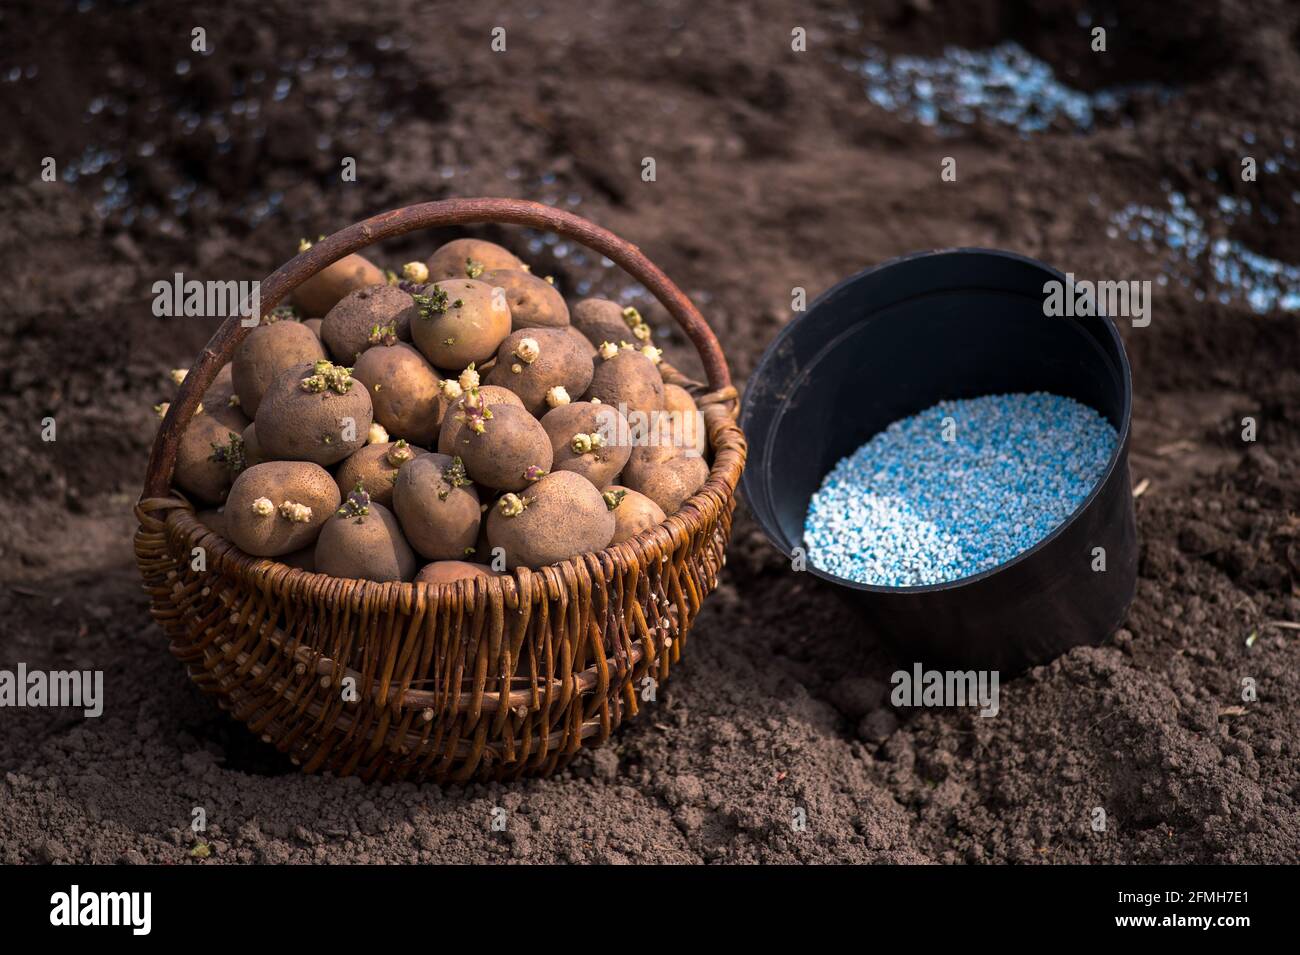 Kartoffelknollen mit grünen Sprossen in einem Weidenkorb und Ein schwarzer Behälter mit blau-weißen Düngemittelpellets aus der Nähe des Hintergrund des Ground wi Stockfoto